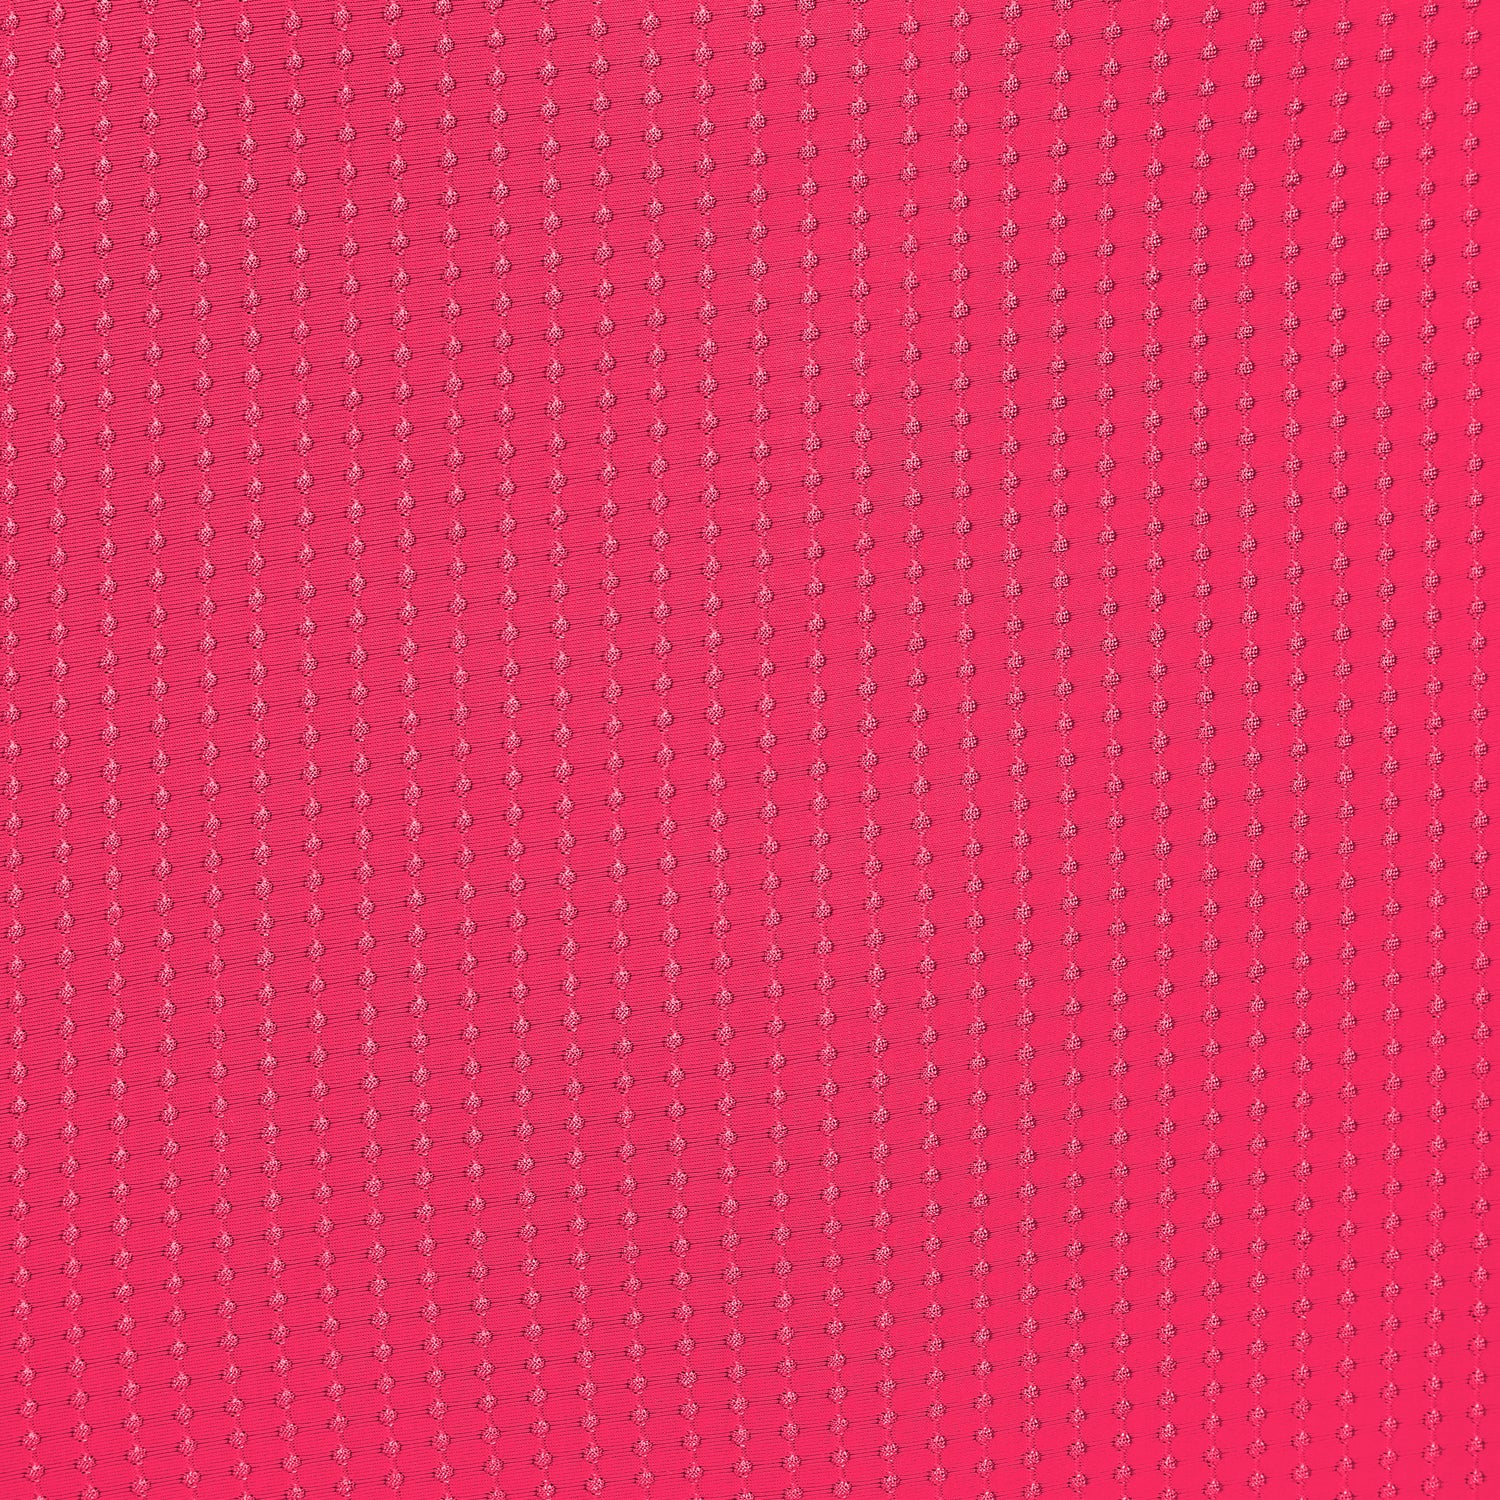 Bottom Dots-Virtual-Pink Frufru-Fio